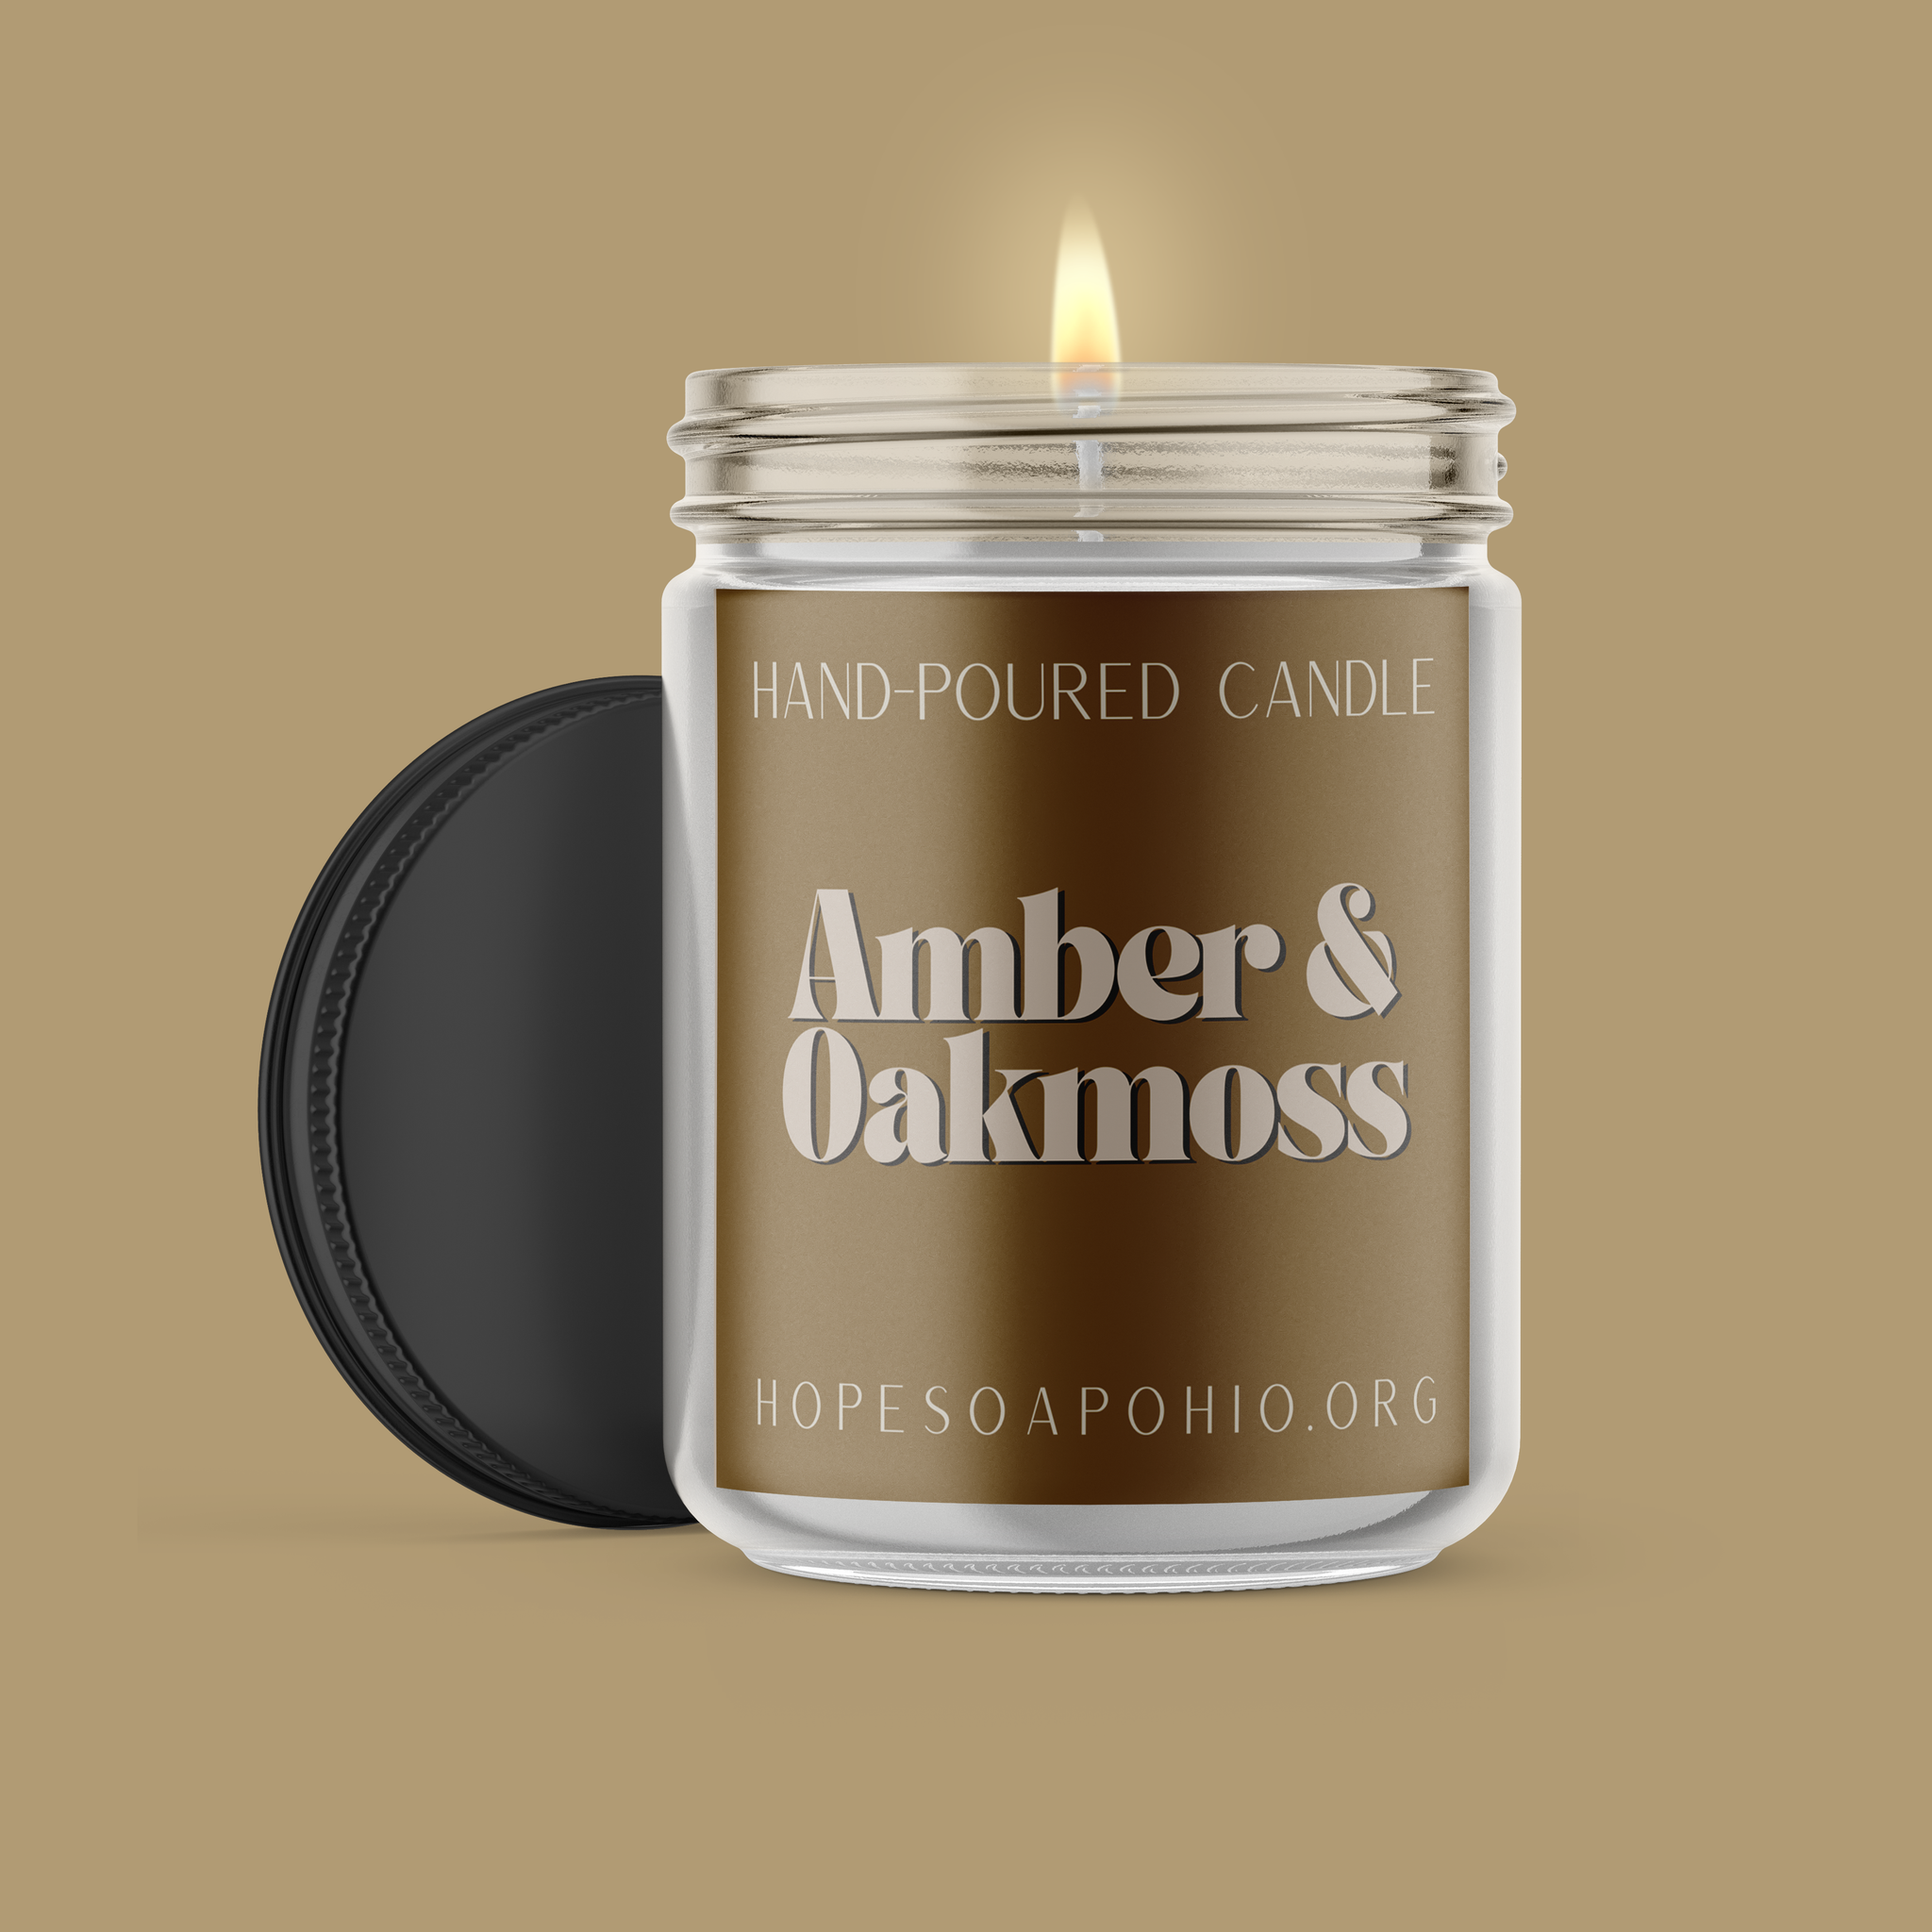 Amber & Oakmoss Candle - HOPESOAPOHIO